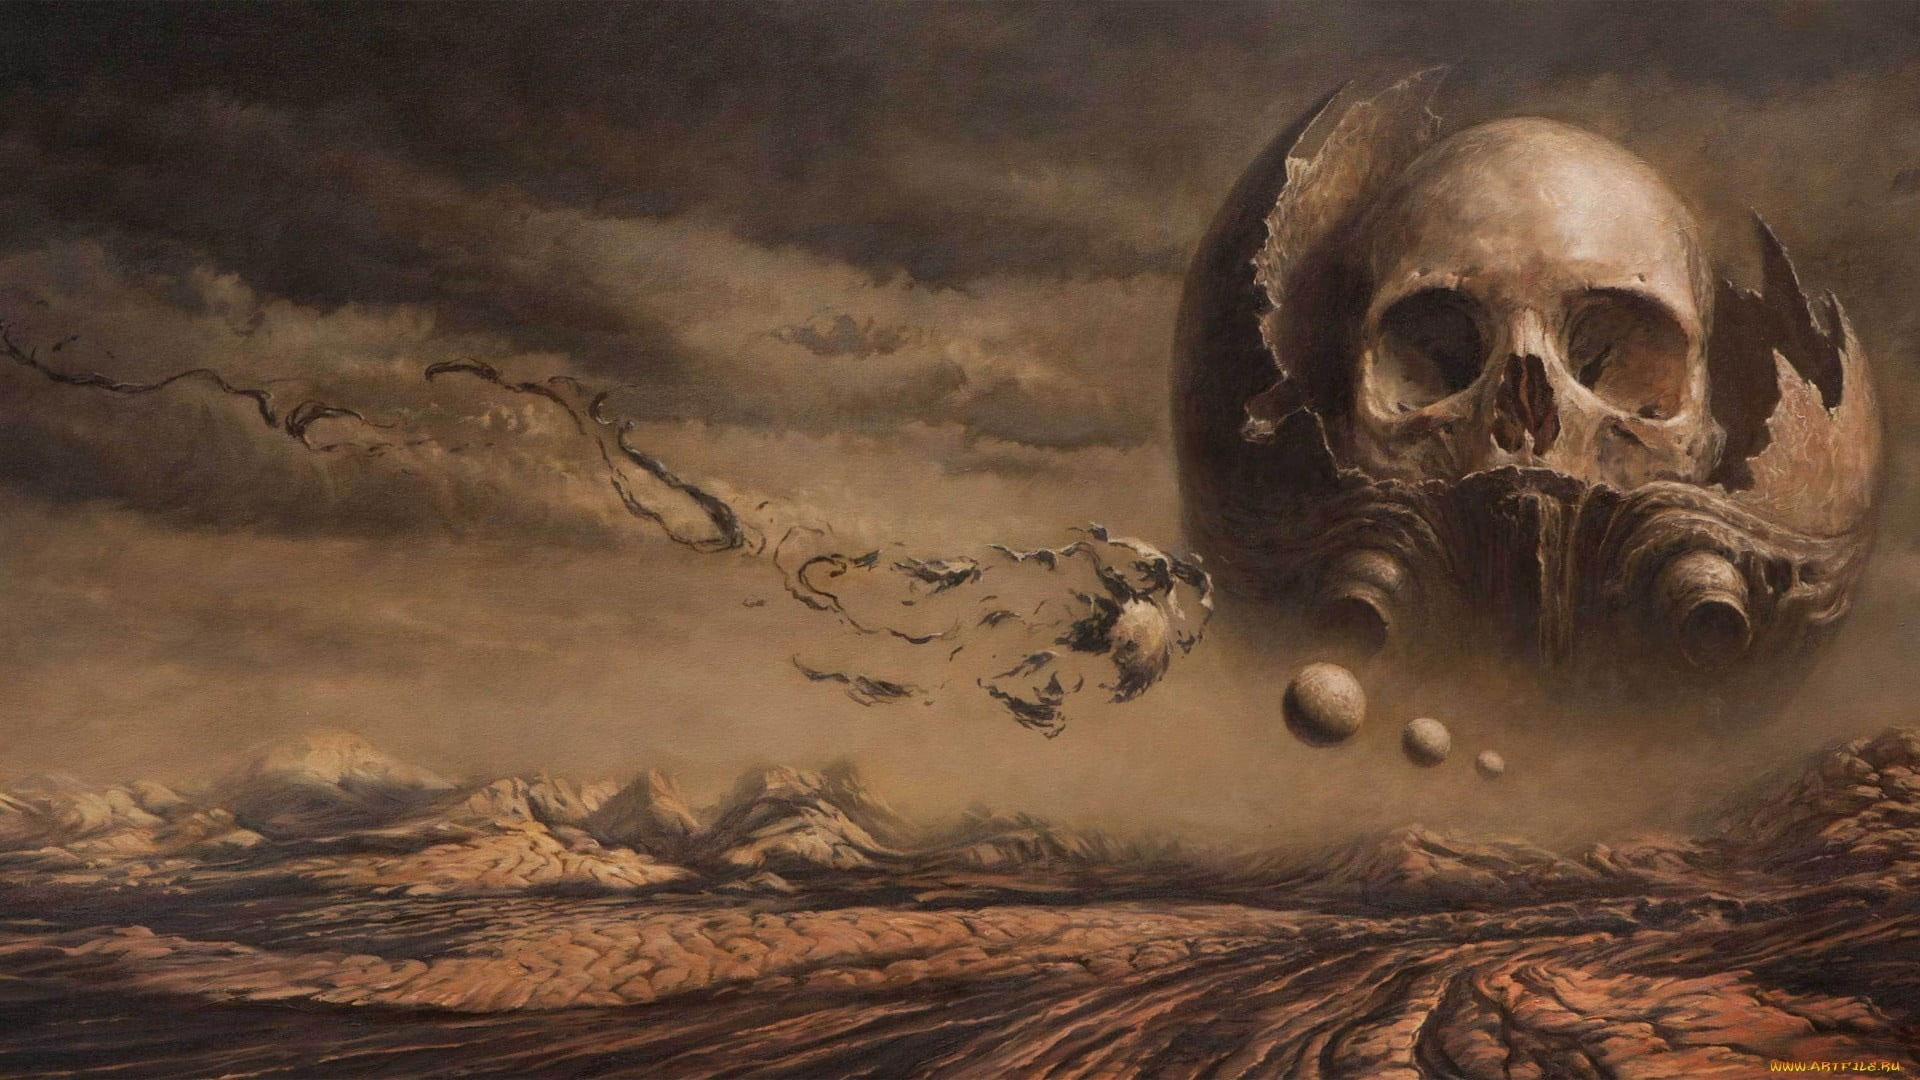 Gray skull wallpaper, fantasy art, artwork, dark fantasy, sky